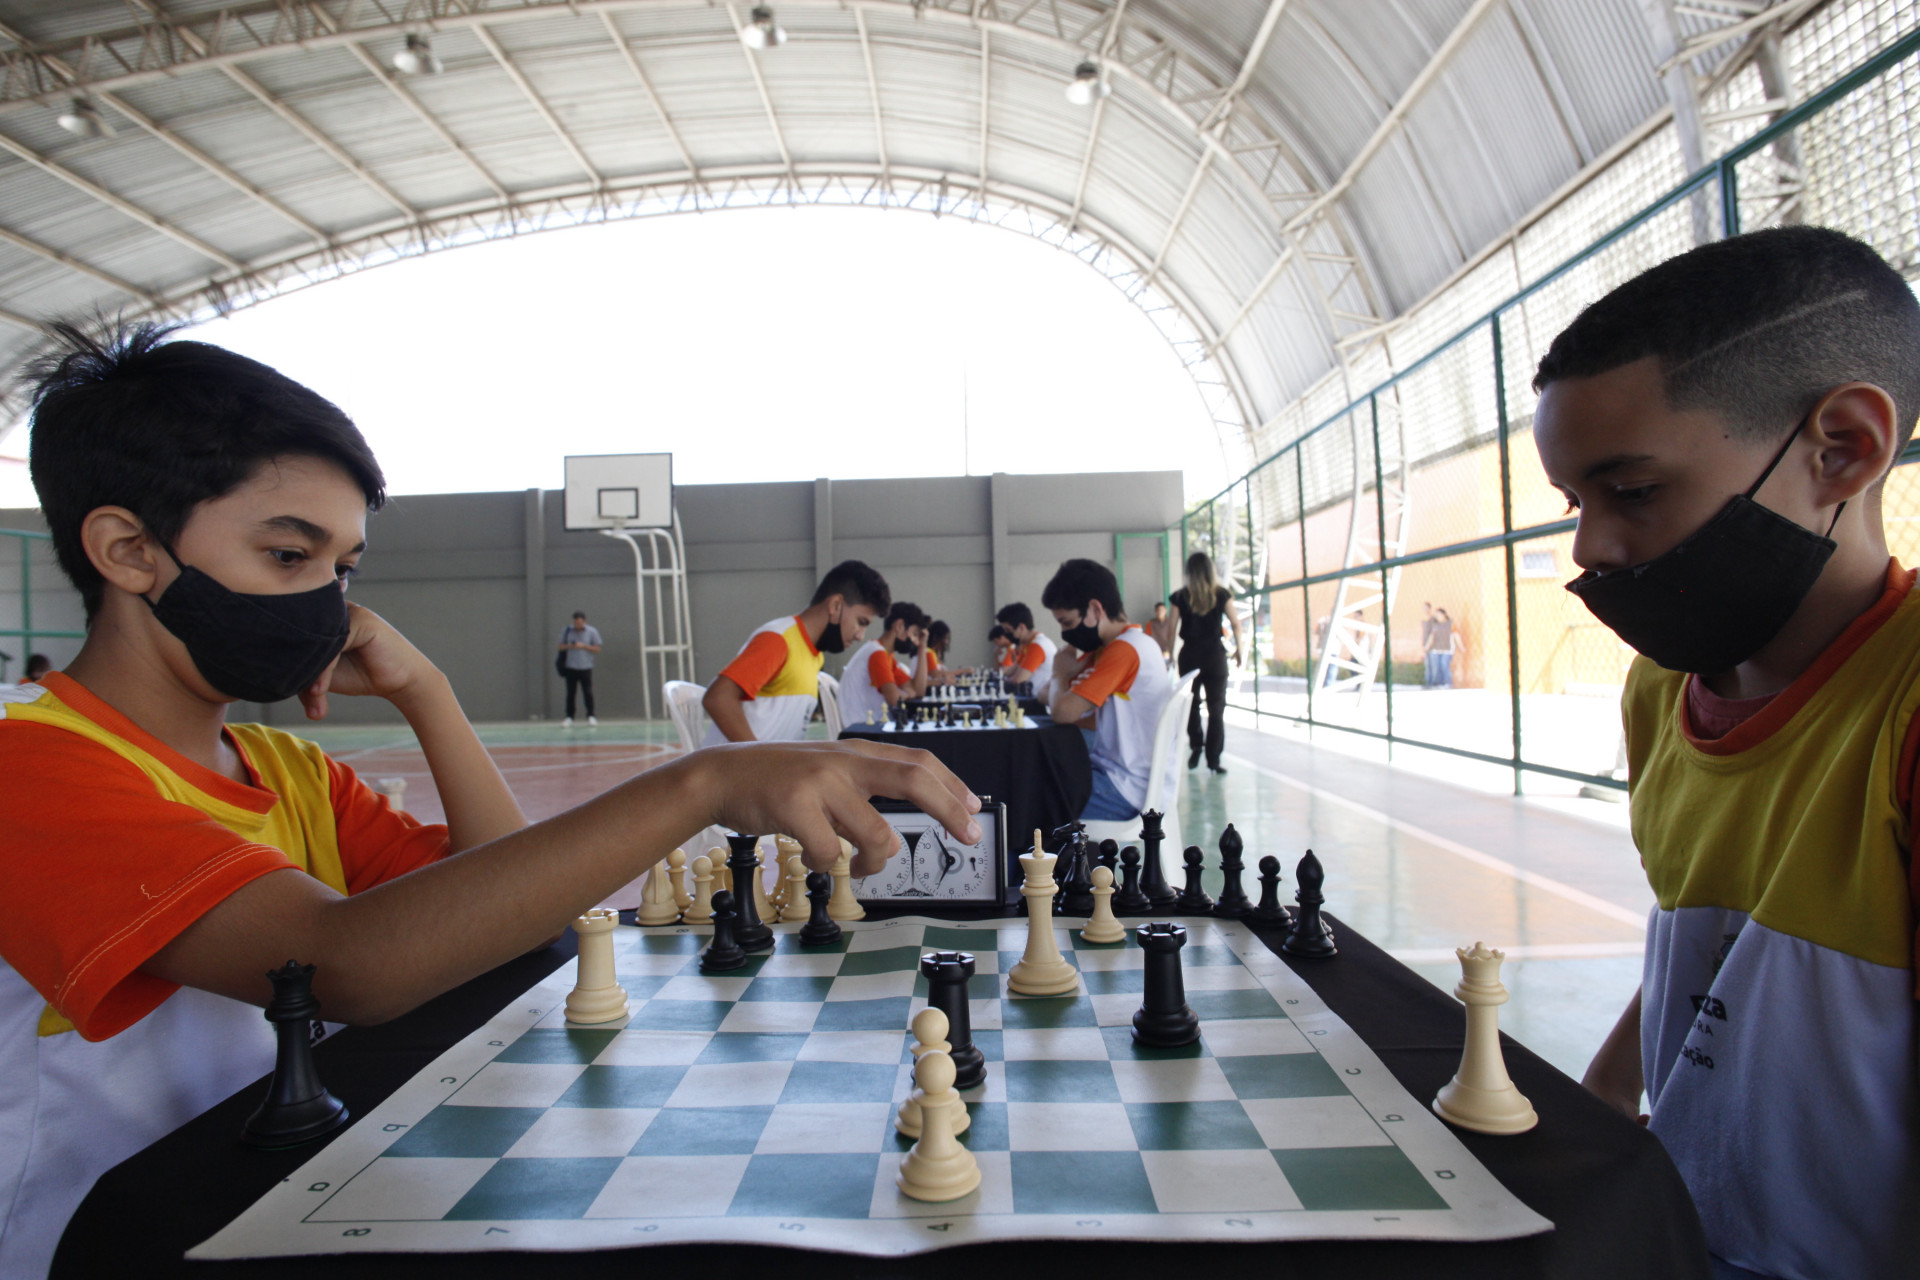 Jogo de Xadrez fará parte do currículo da rede municipal de ensino